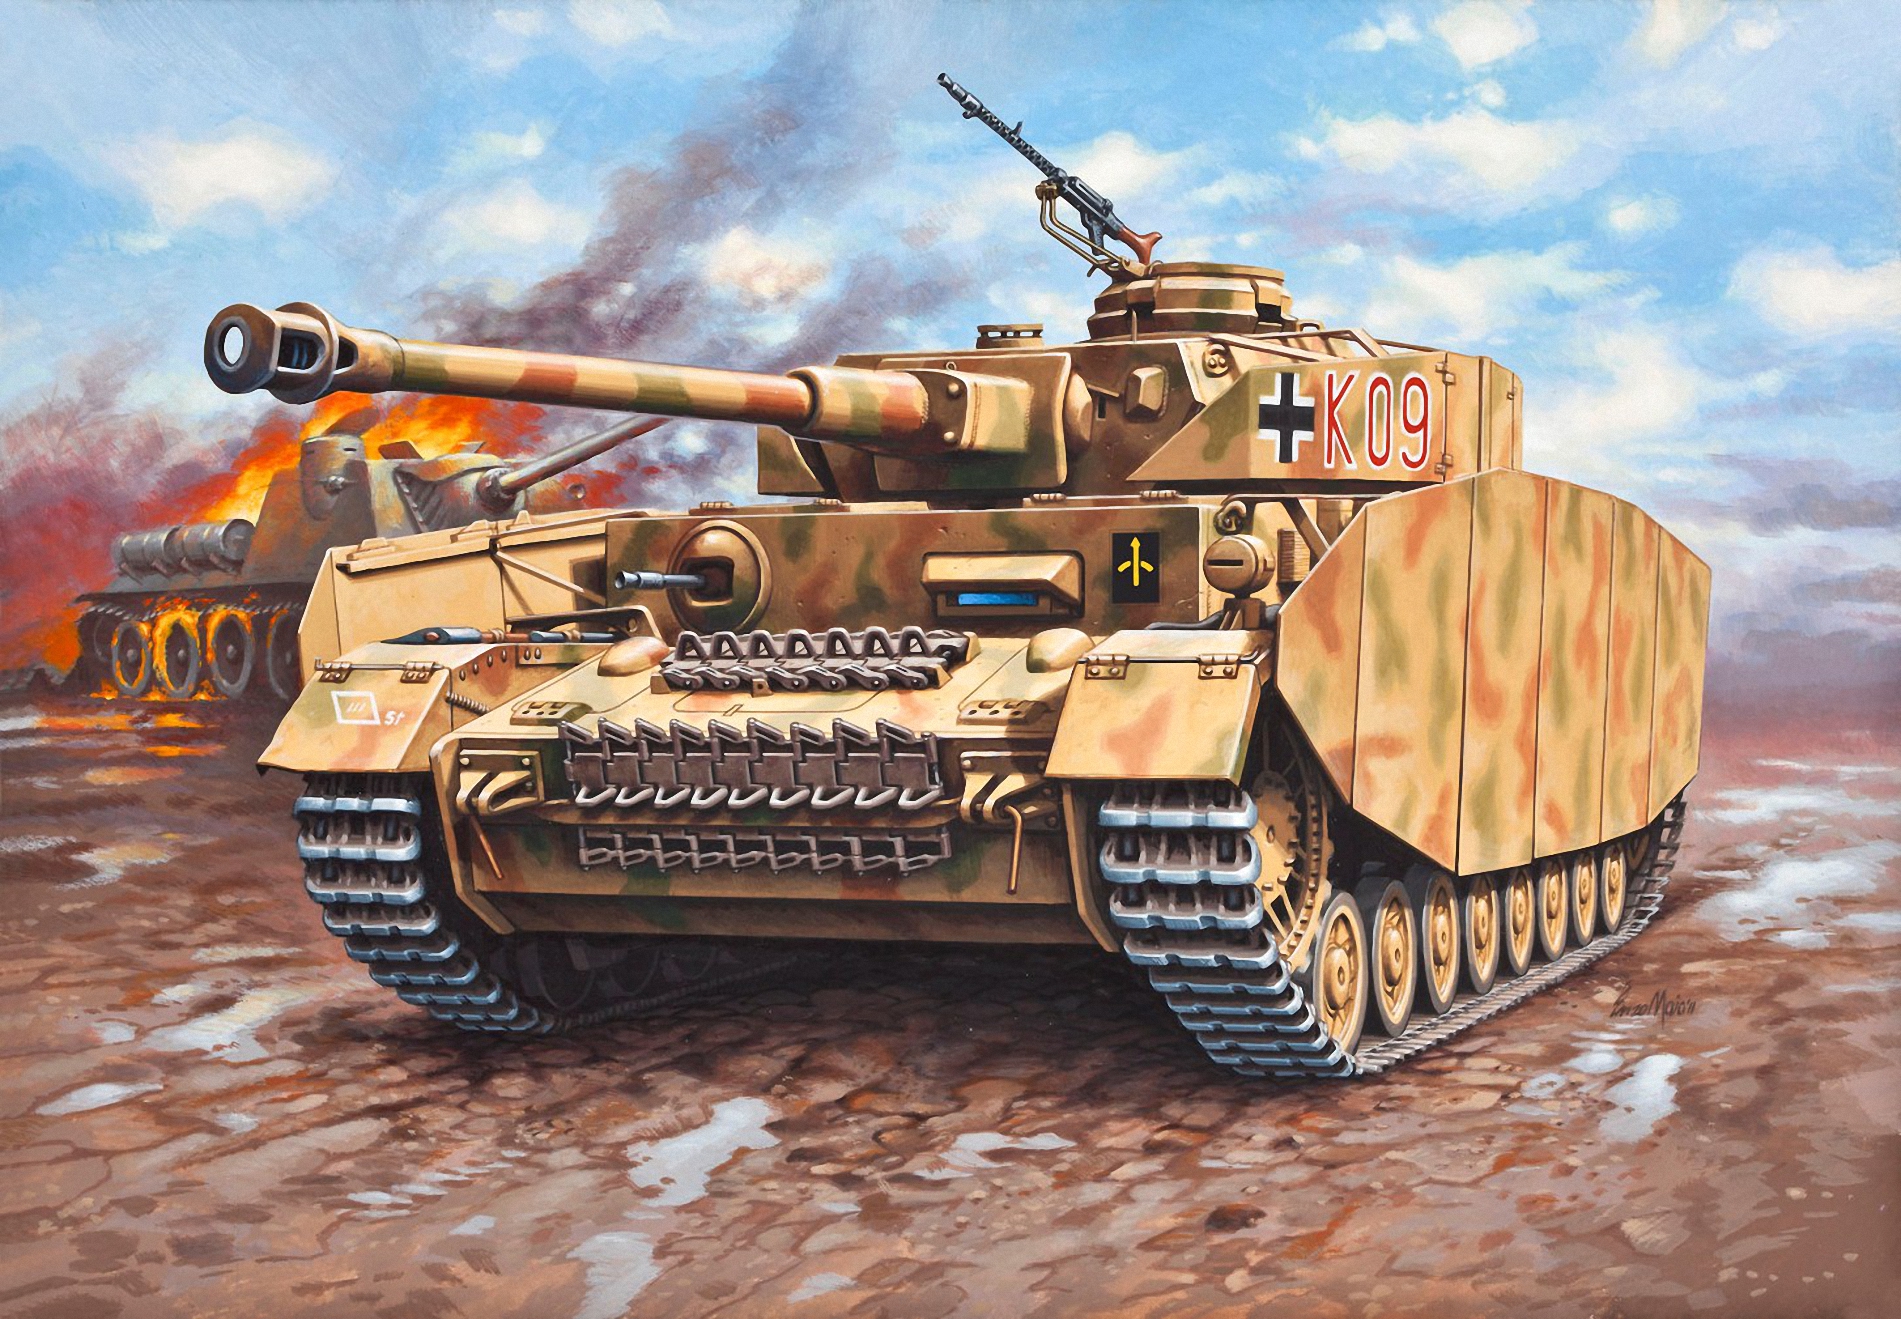 Pz kpfw t. PZKPFW 4 Ausf h. PZKPFW IV Ausf h. Танк PZ. Kpfw. IV. Танк Panzer 4 Ausf.h.